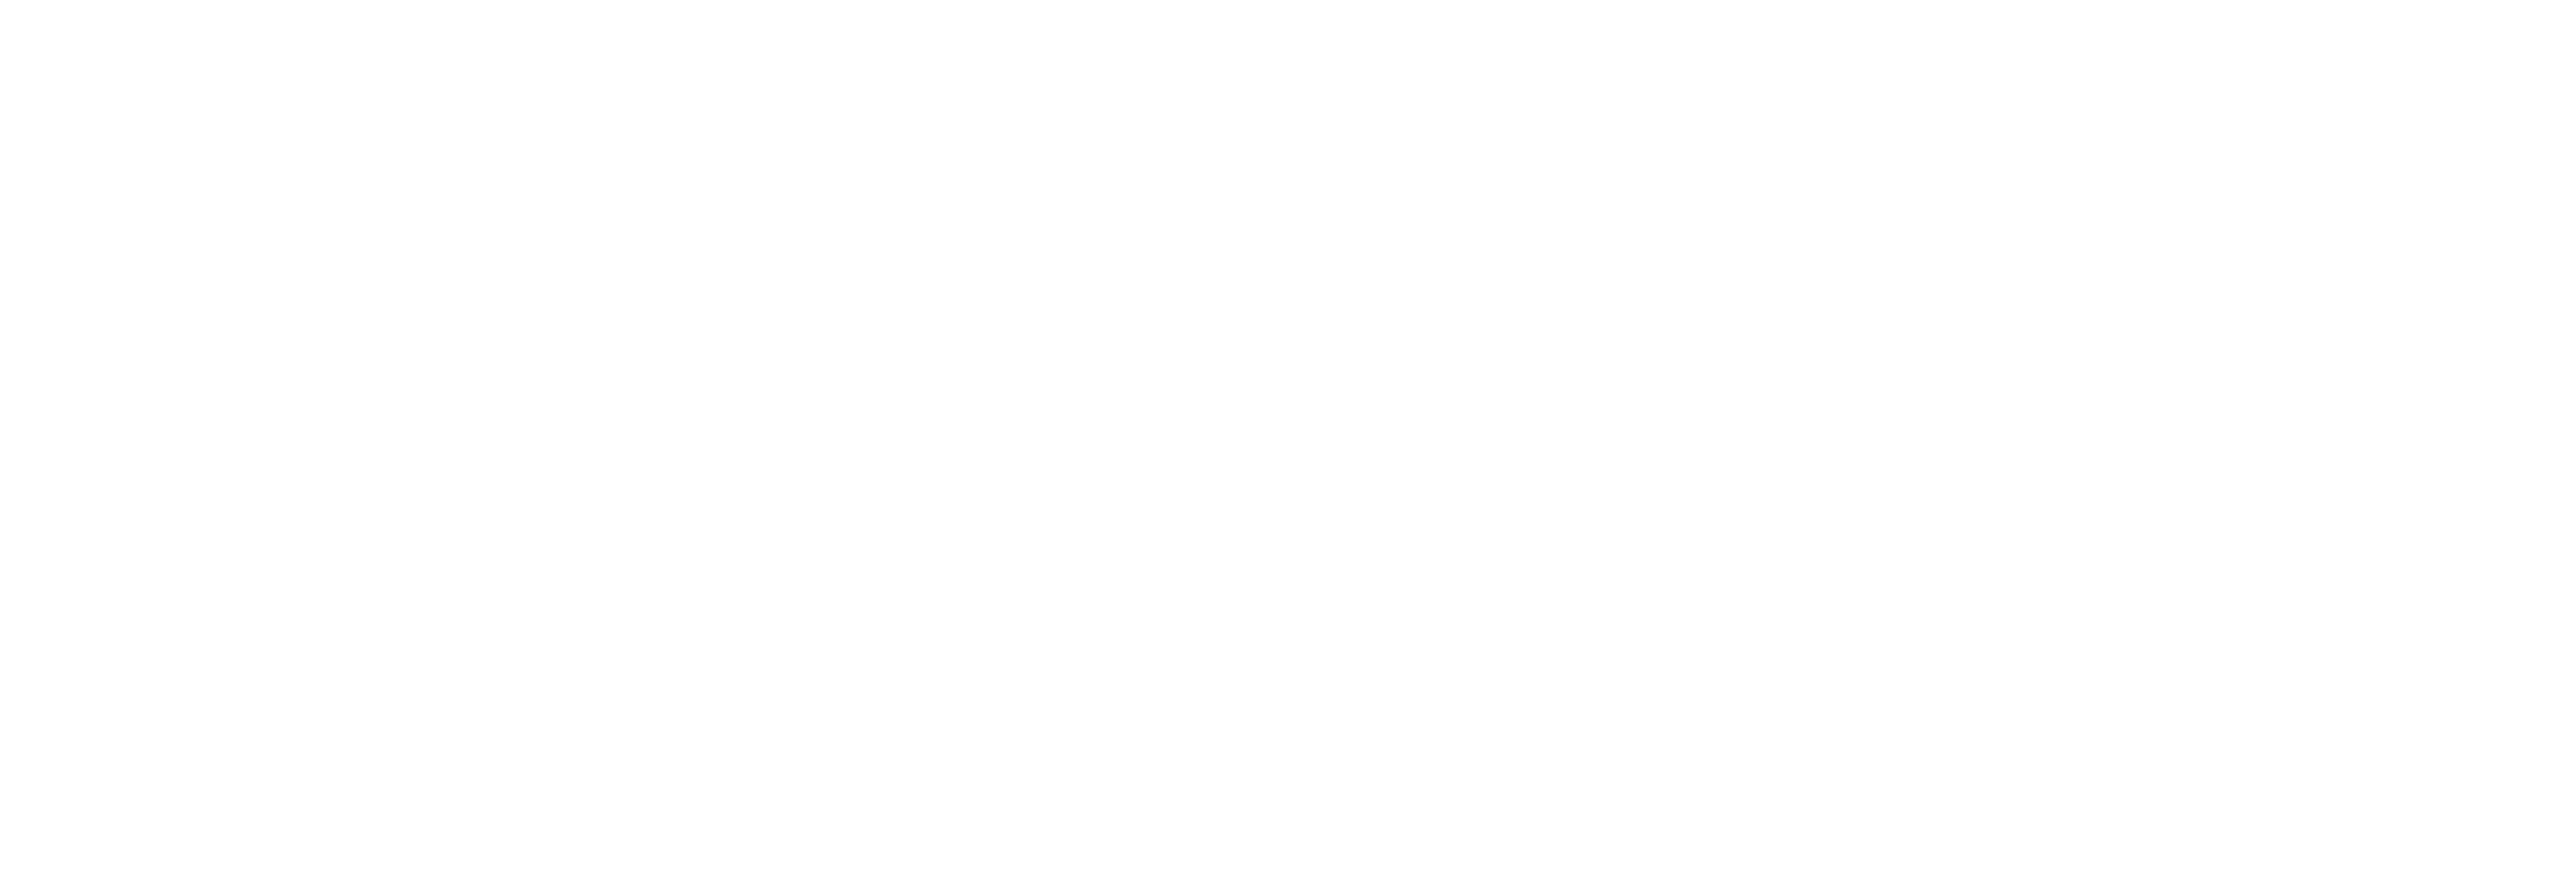 Clinique AniCura Tilleuls à Hœrdt logo